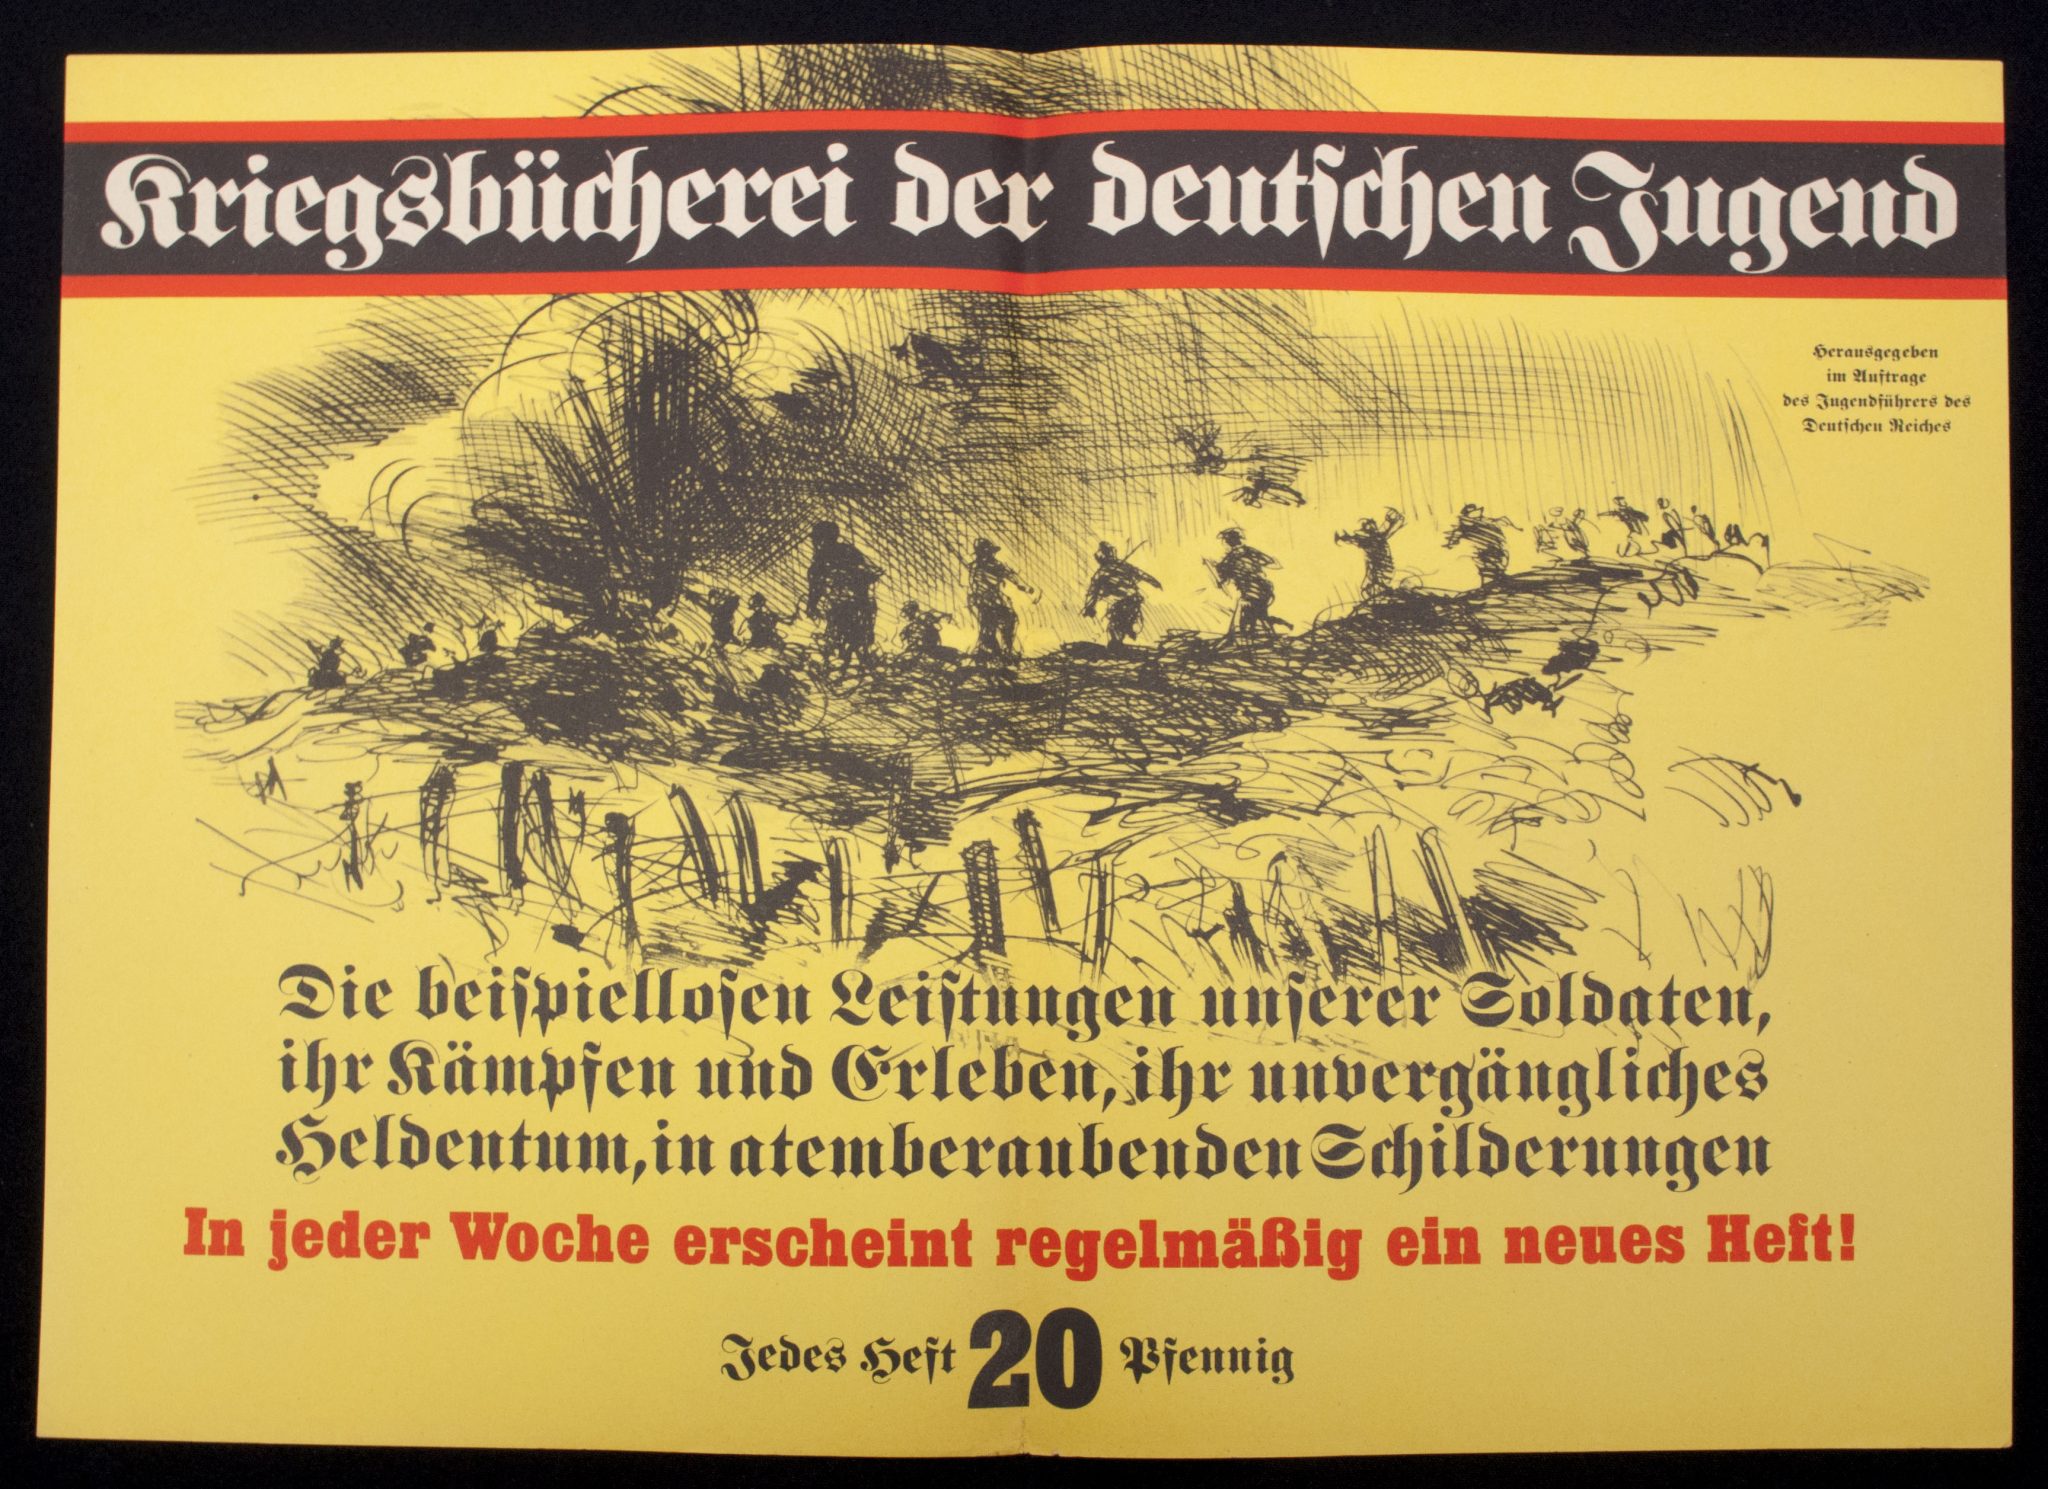 (Poster) Kriegsbücherei der Deutschen Jugend (A3 size)